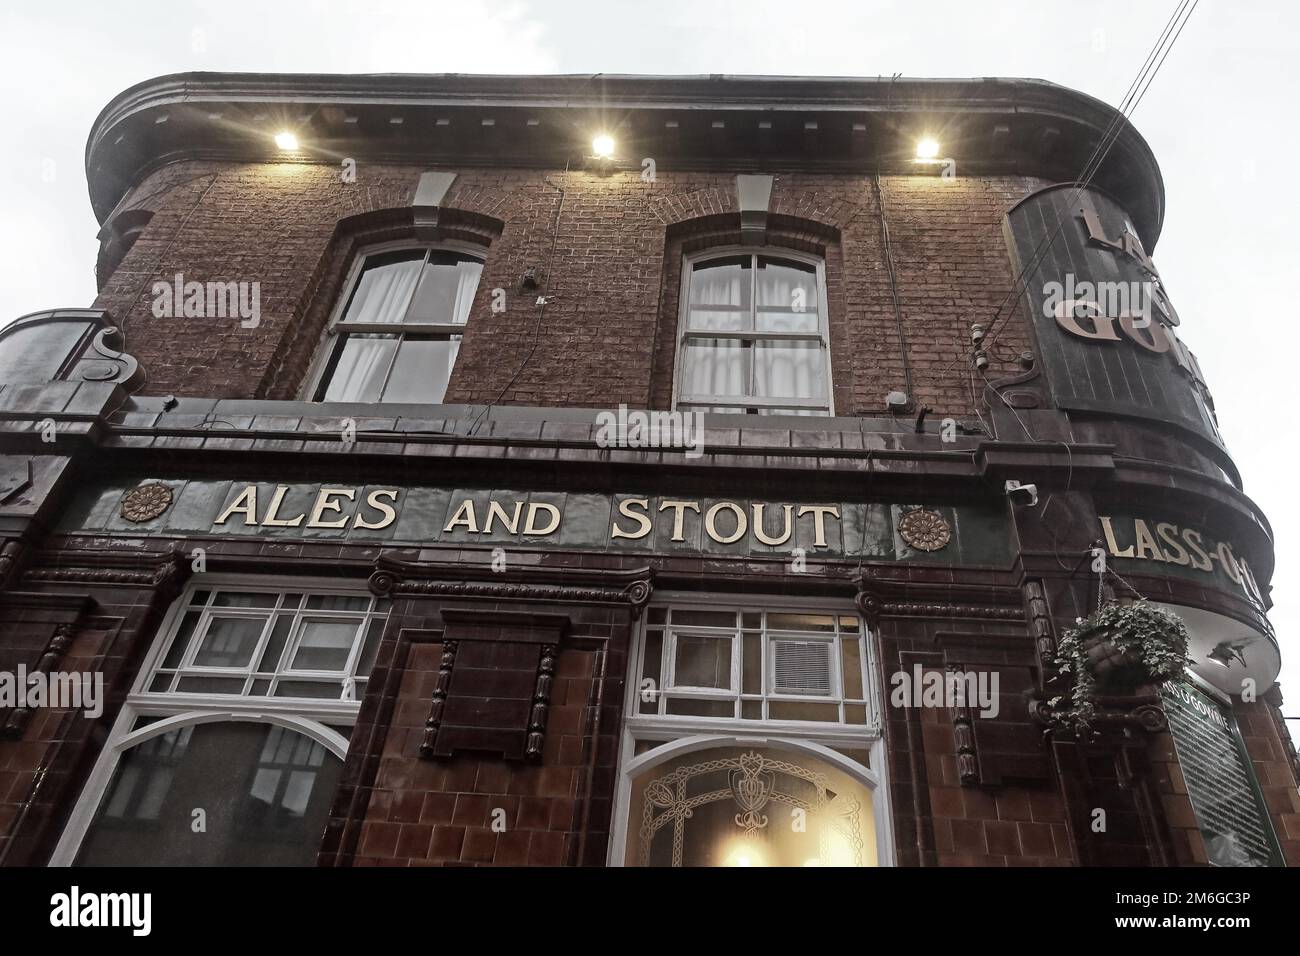 Carreaux Ales et Stout sur le côté du pub lass o'Gowie, 36 Charles St, Manchester, Angleterre, Royaume-Uni, M1 7DB Banque D'Images